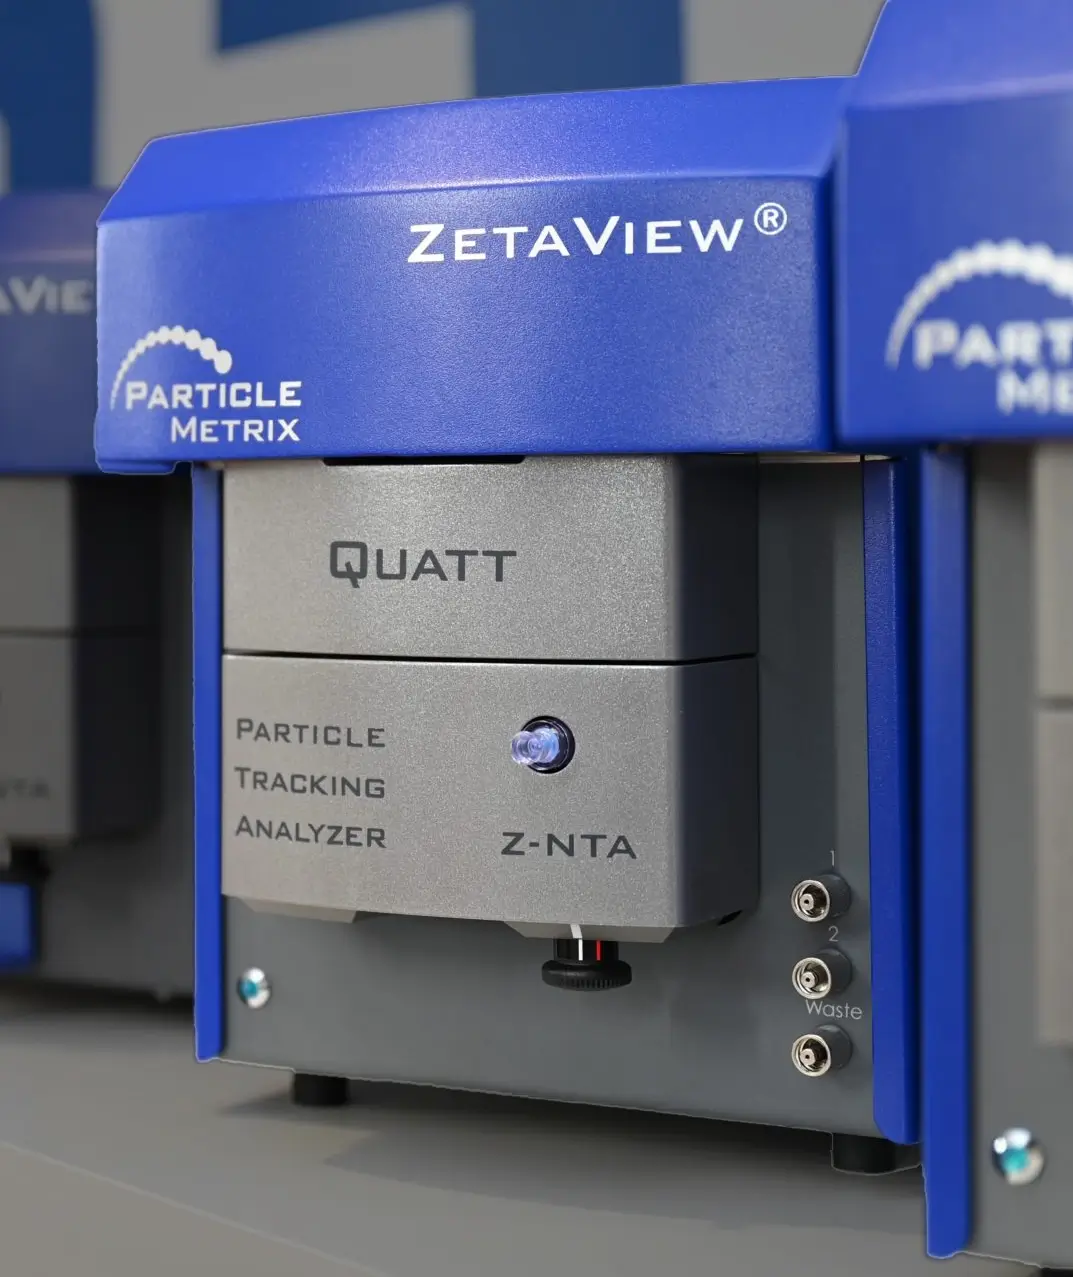 ZetaView Quatt PMX 430: Analisador de Nanopartículas e Potencial Zeta | Capa